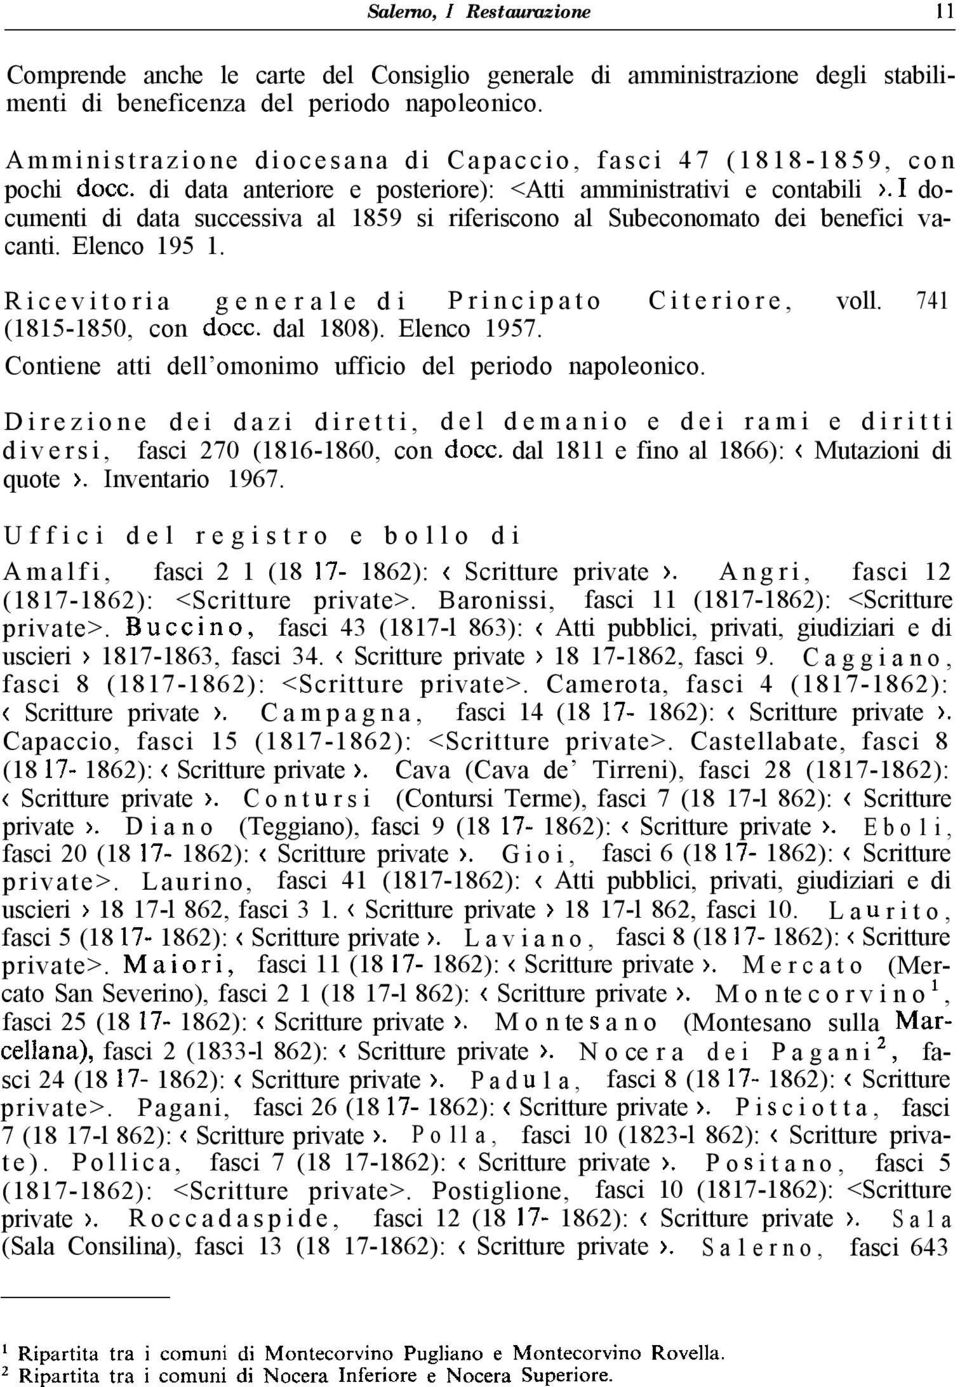 1 documenti di data successiva al 1859 si riferiscono al Subeconomato dei benefici vacanti. Elenco 195 1. Ricevitoria generale di Principato Citeriore, voll. 741 (1815-1850, con docc. dal 1808).